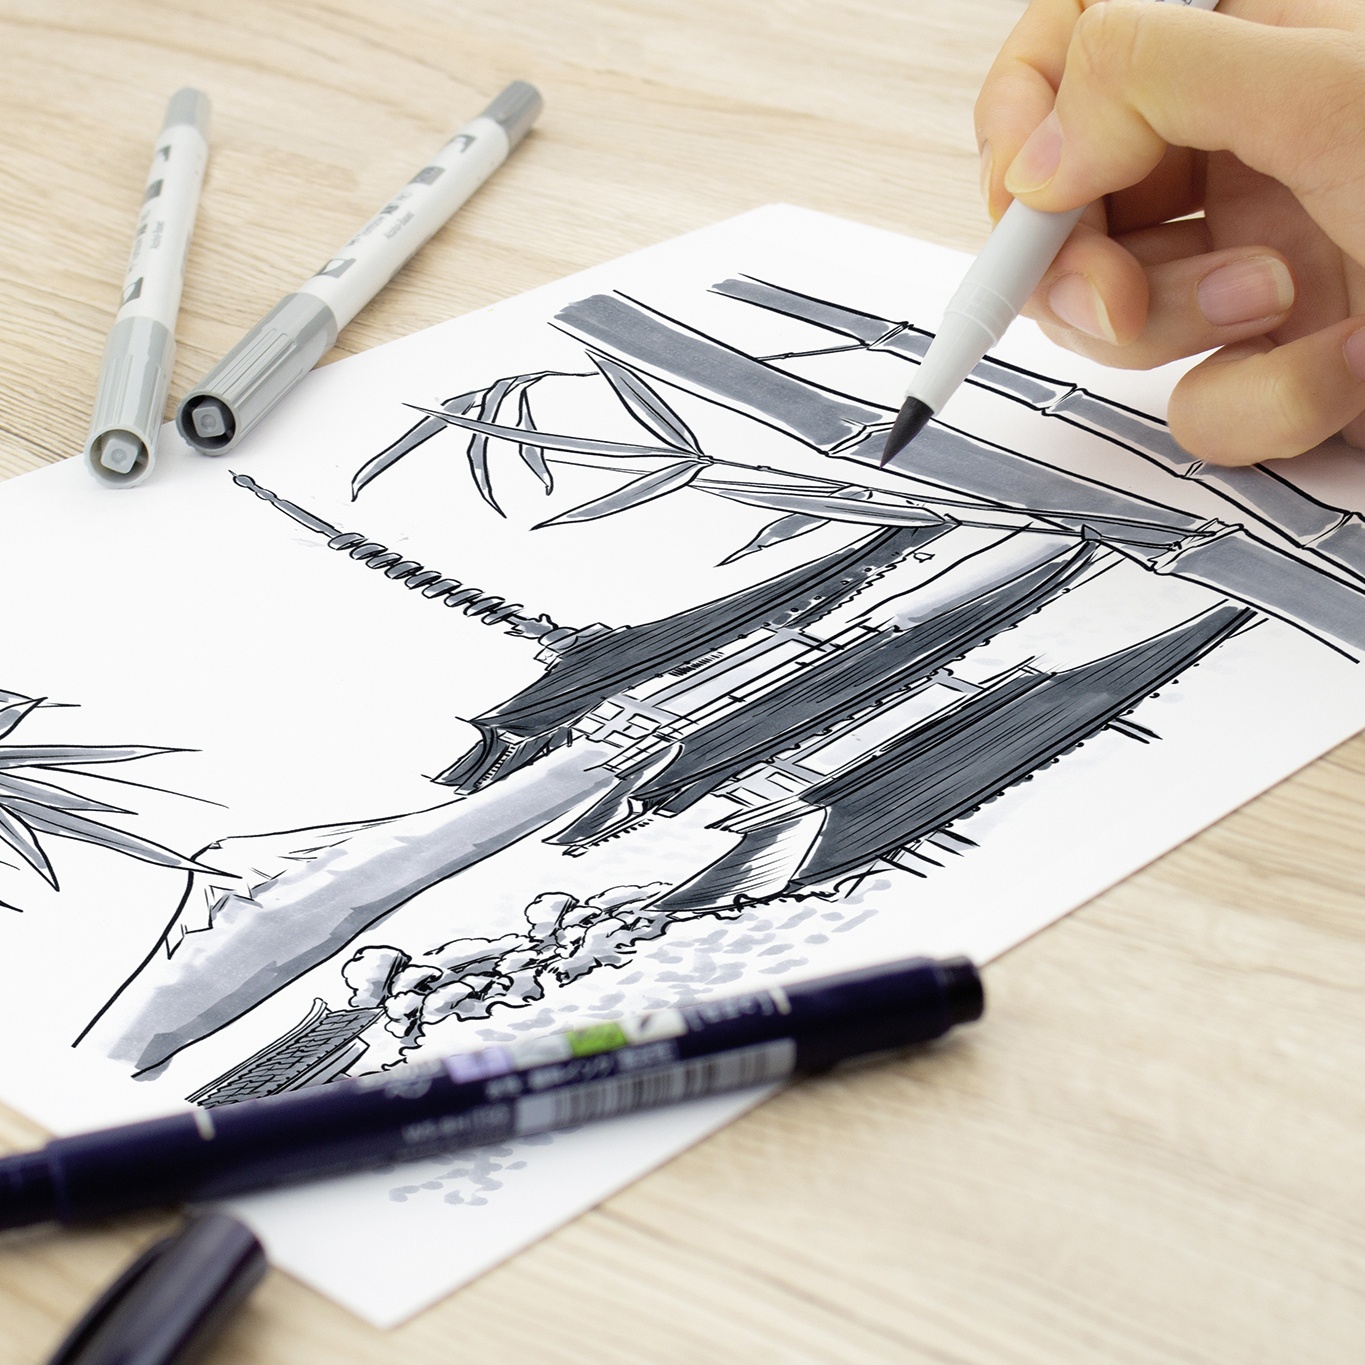 ABT PRO Dual Brush Pen ensemble de 5 Cold Grey dans le groupe Stylos / Crayons d'artistes / Feutres d'illustrations chez Pen Store (101259)